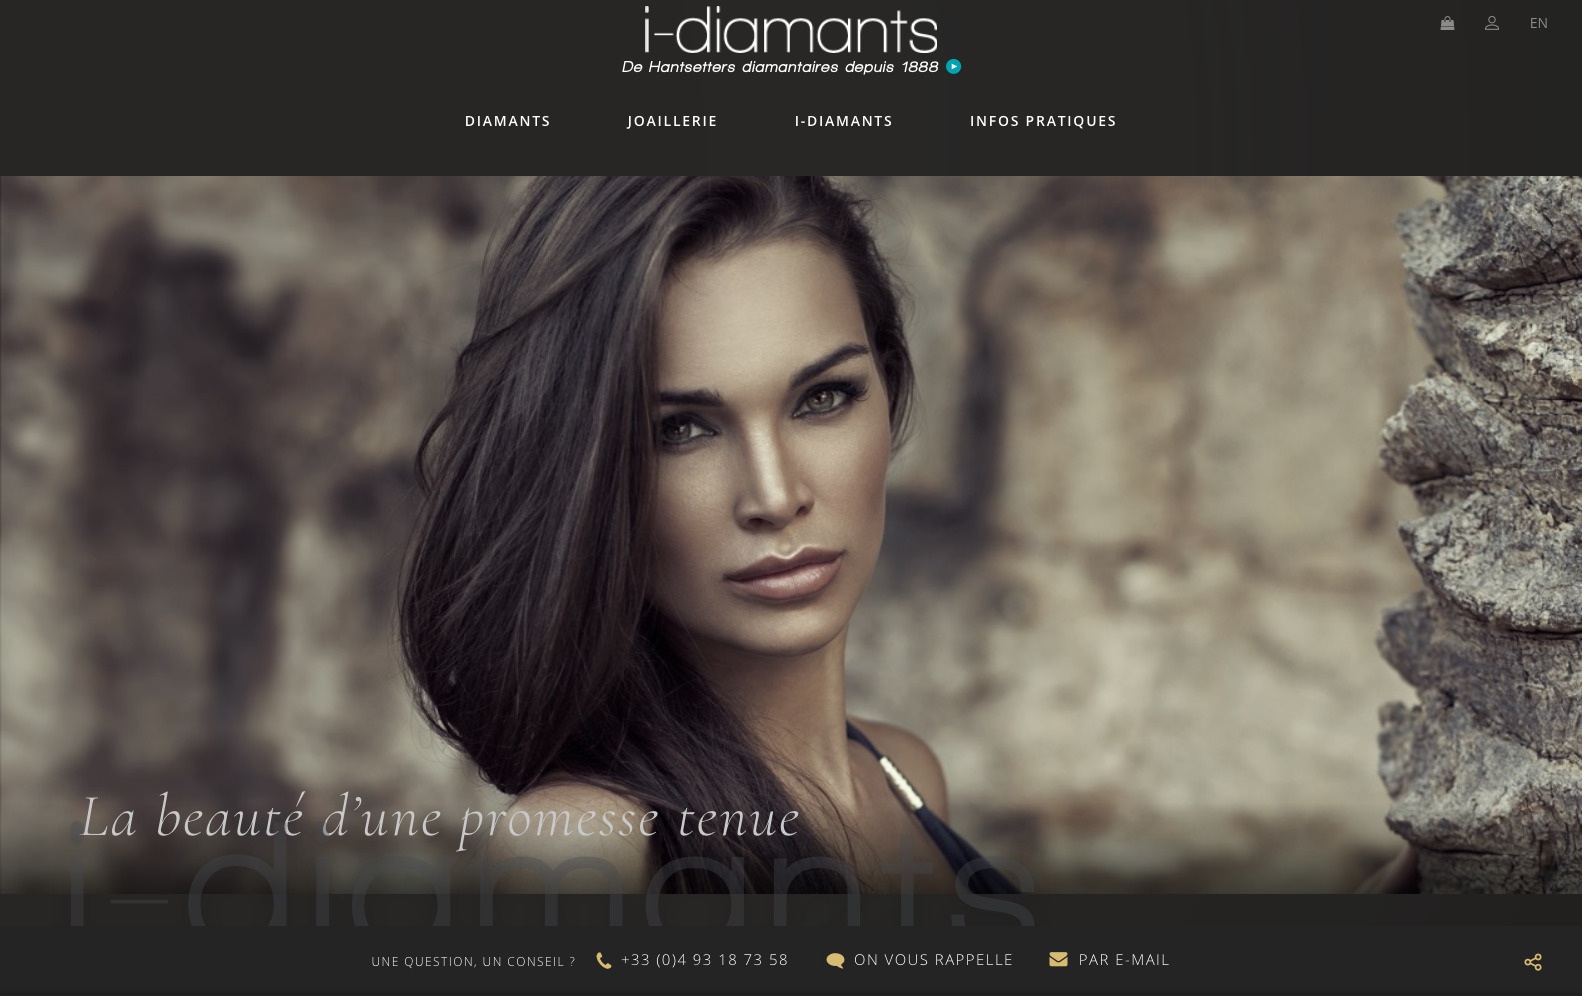 I-diamants.com - creation du site internet e-commerce, diamant et joaillerie - Refonte du site internet responsive i-diamants.com 